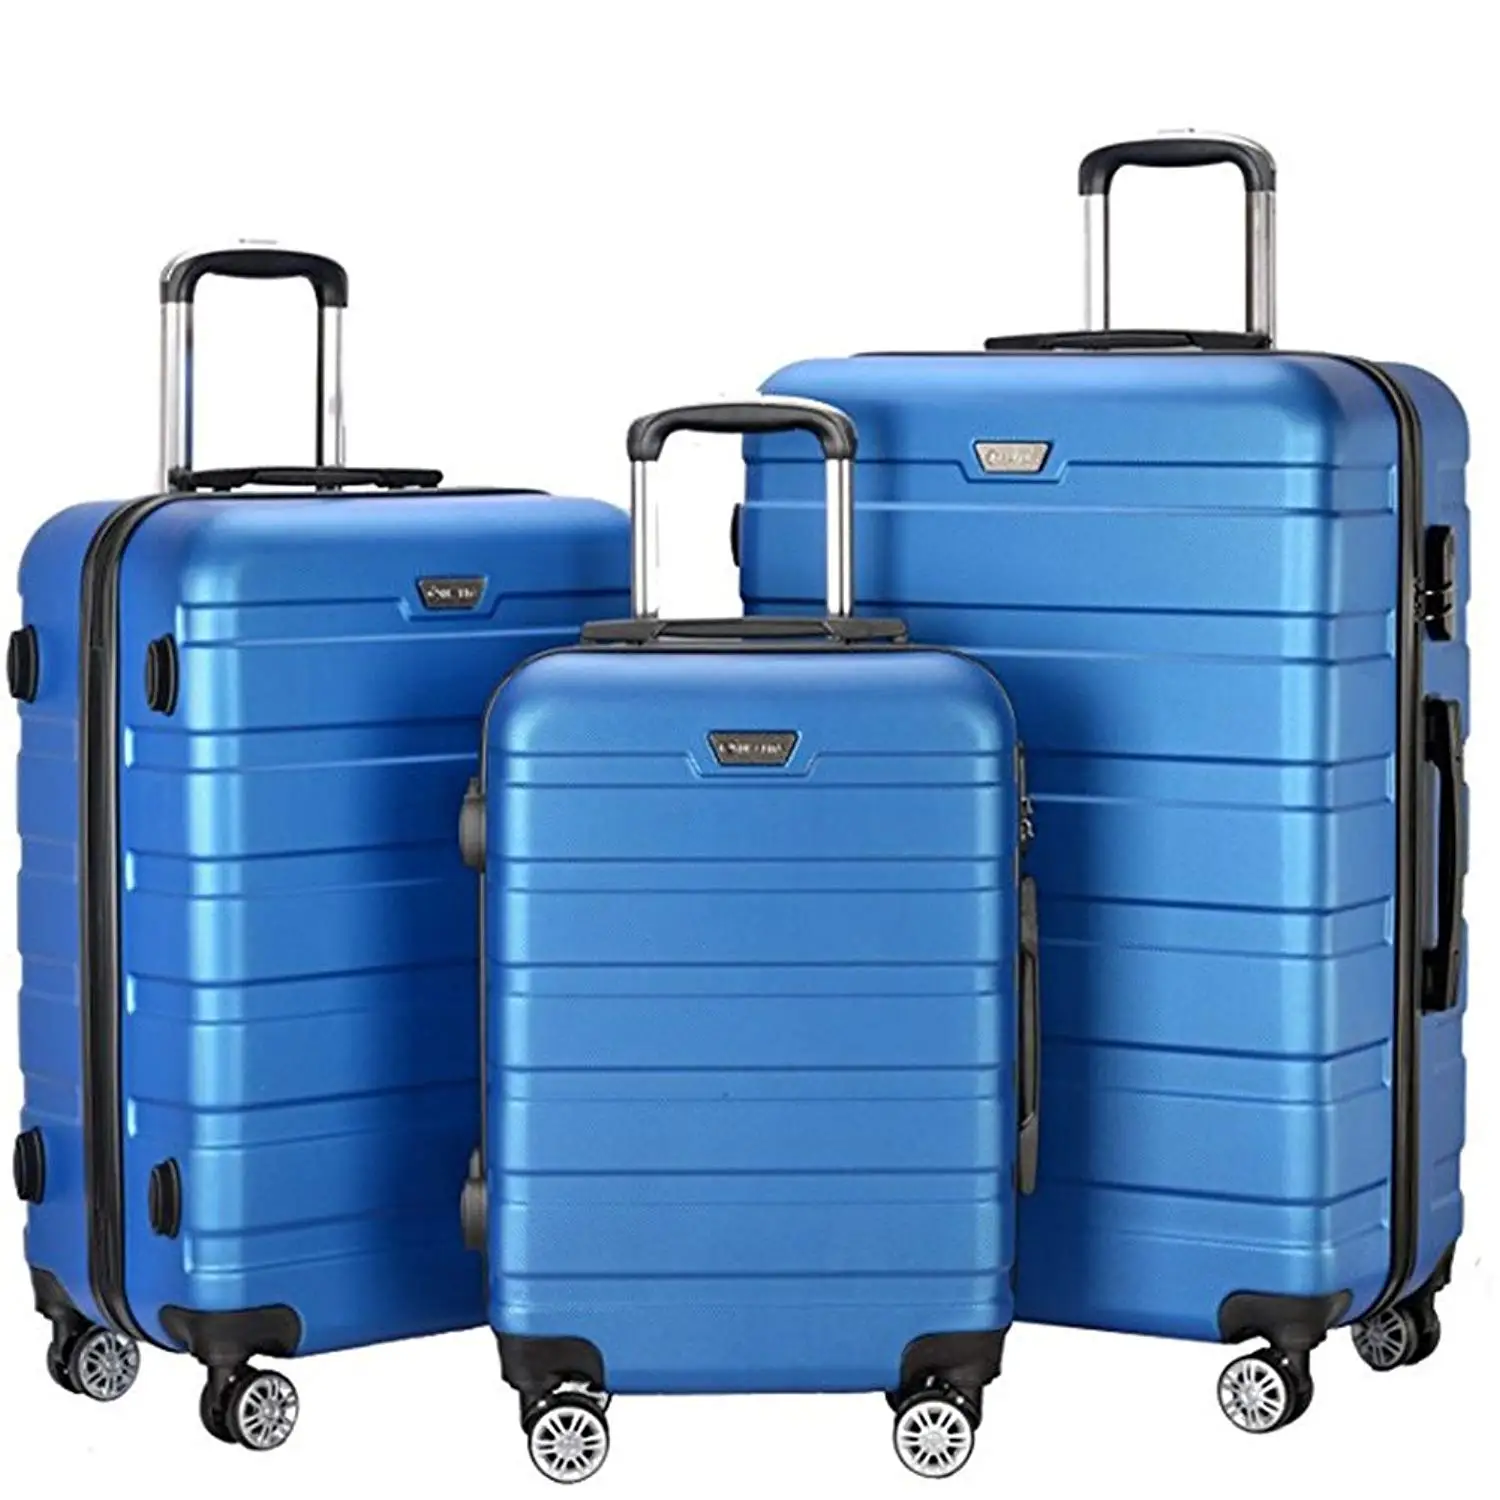 Cheap Hardside Luggage Sets Sale, find Hardside Luggage Sets Sale deals on line at 0